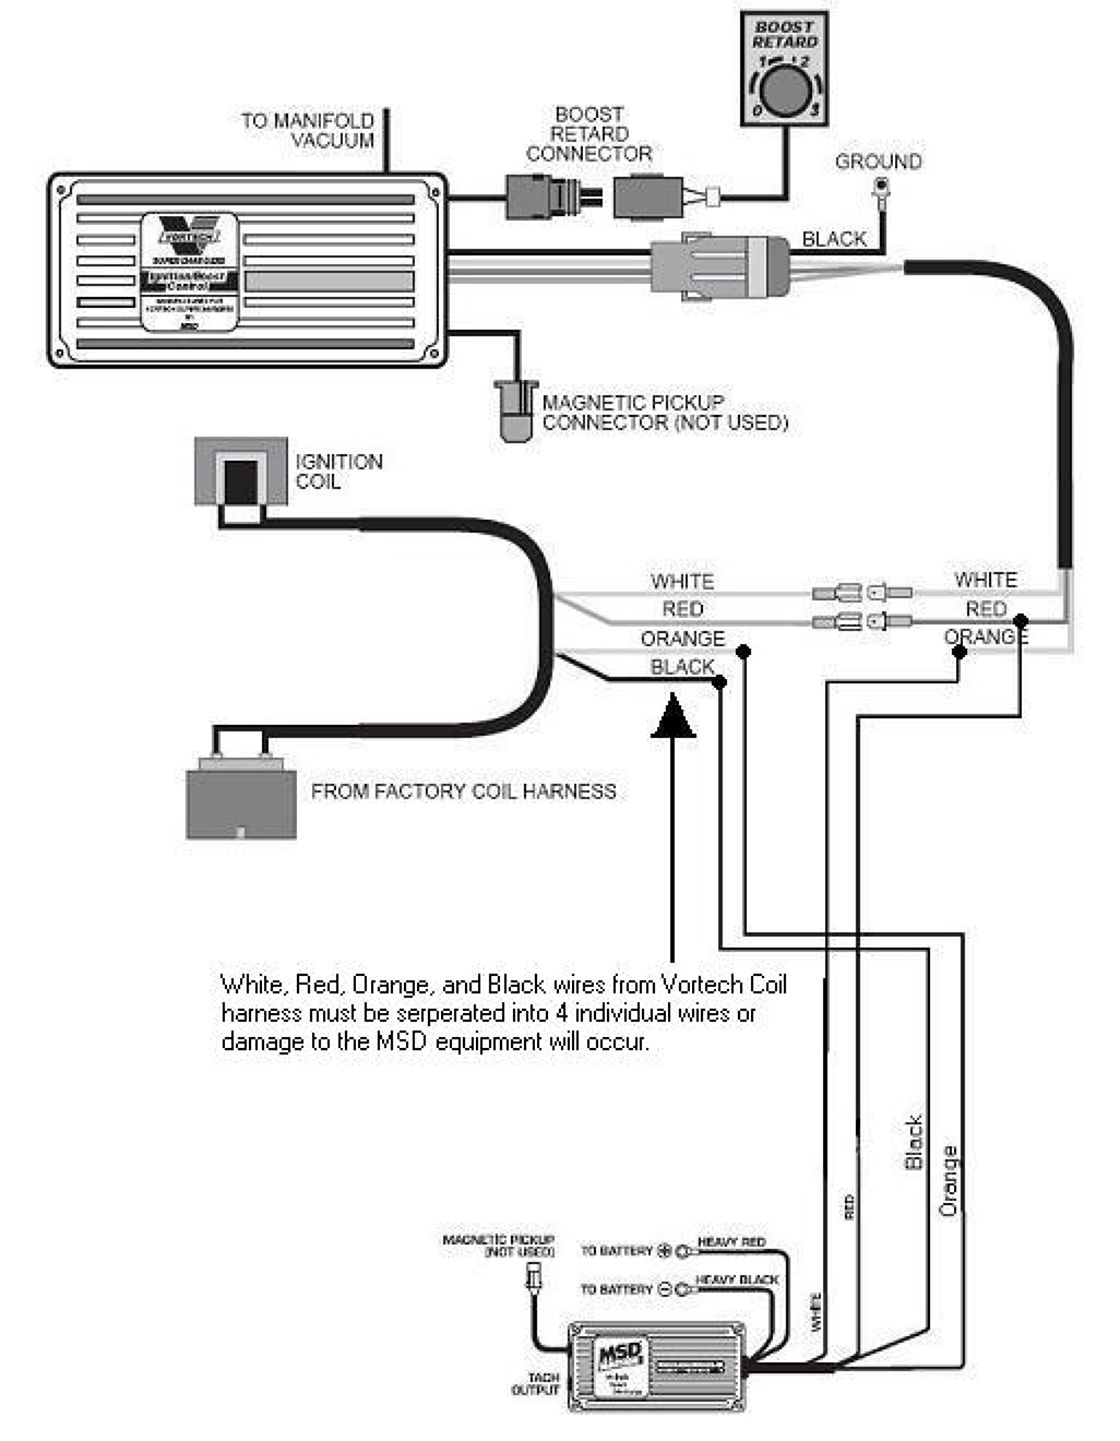 Boost Msd Digital 6Al Wiring Diagram | Wiring Diagram - Msd Digital 6Al Wiring Diagram